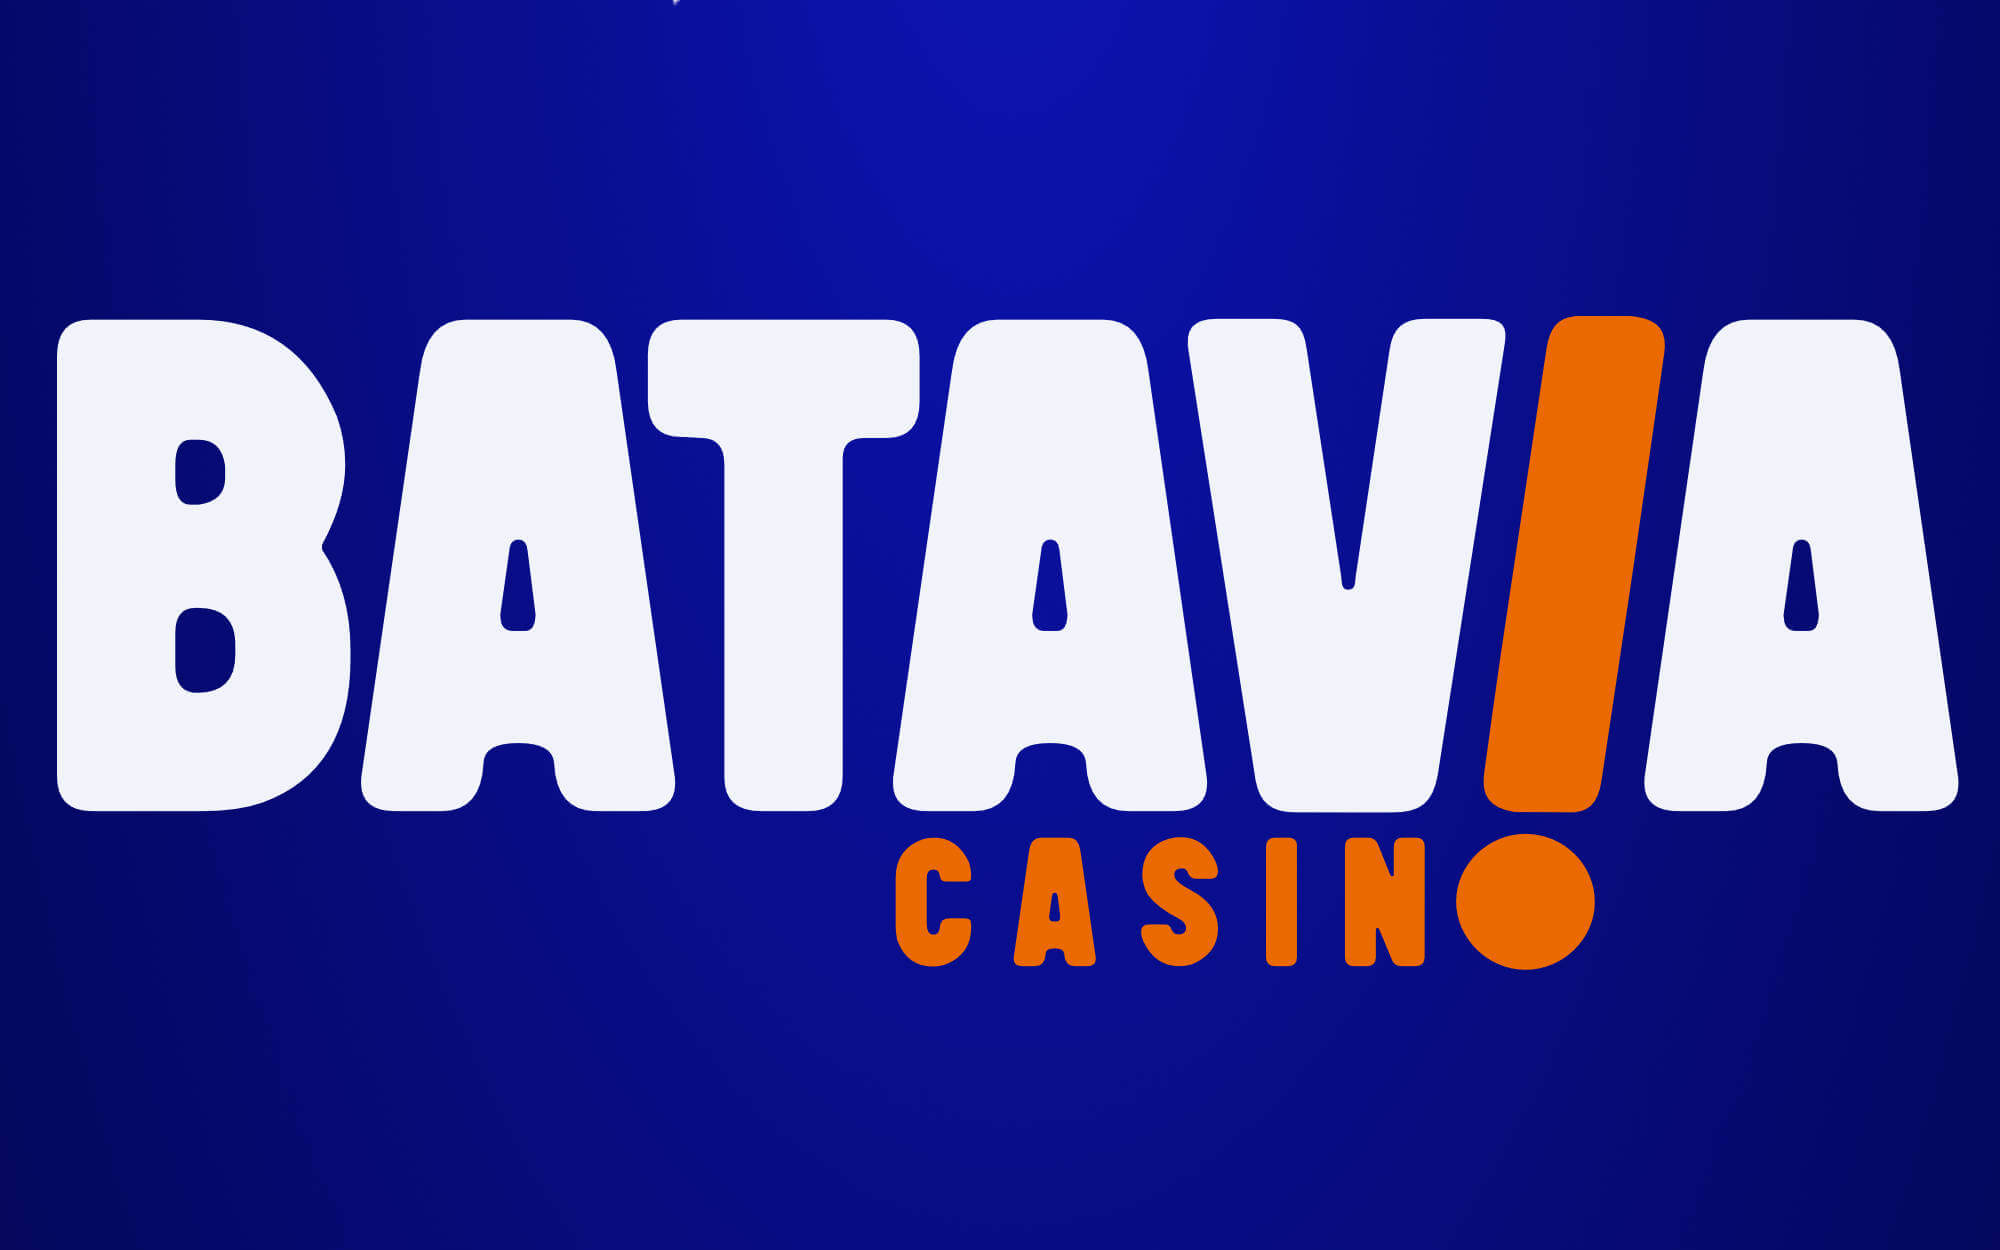 batavia casino nieuwslog cover